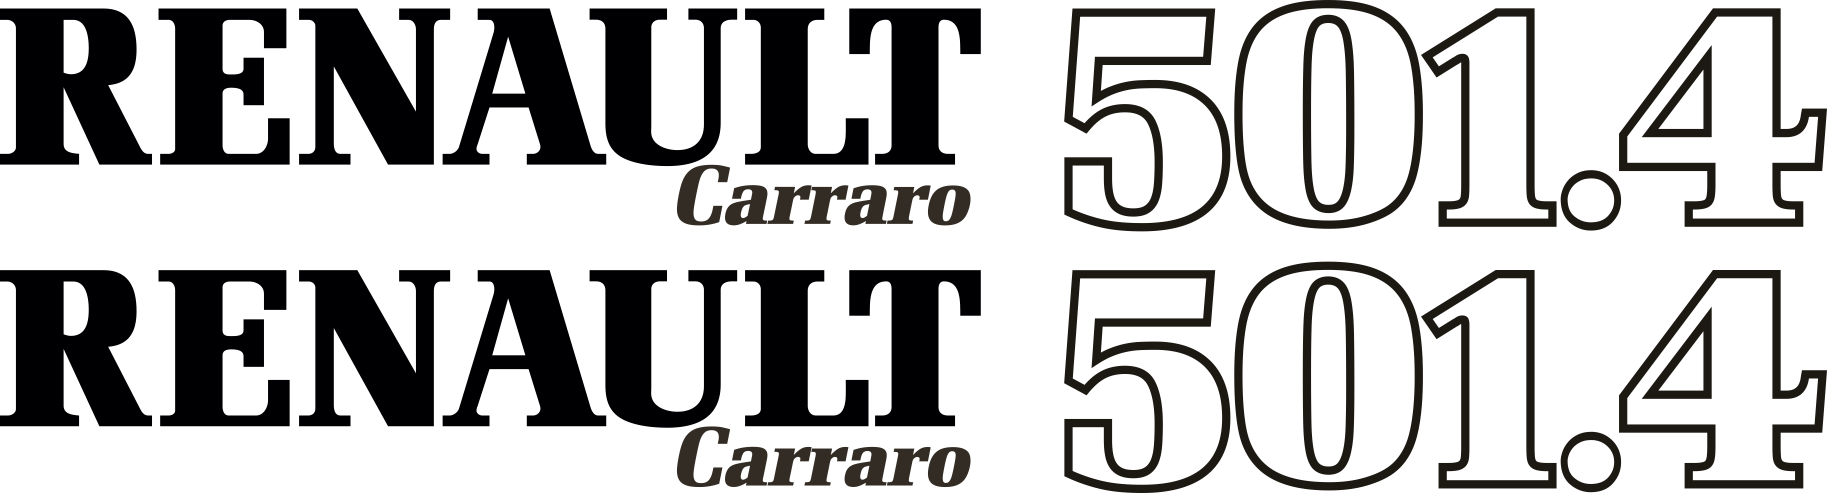 stickers 501-4 Carraro 2